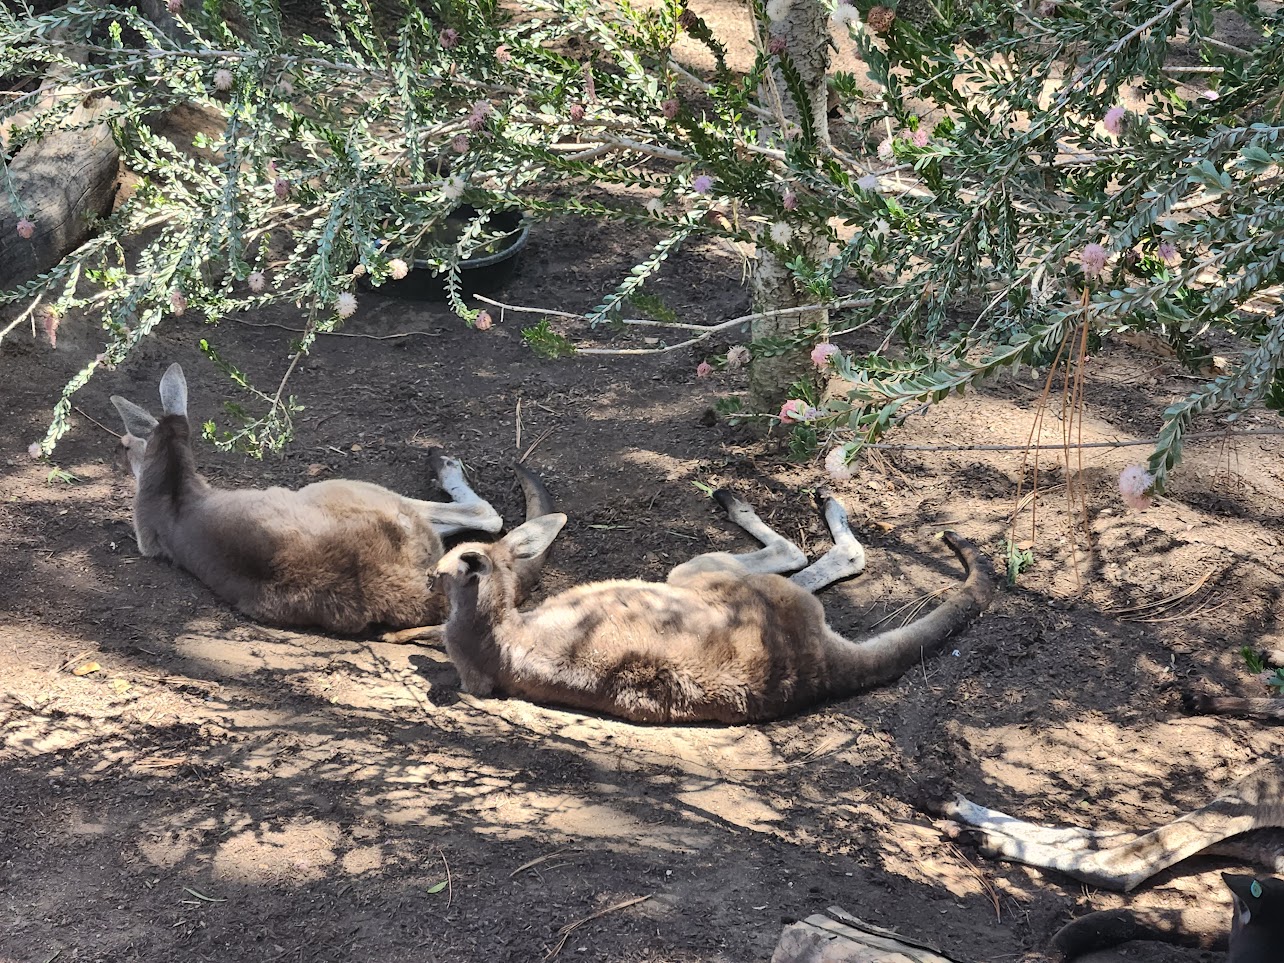 Two kangaroos relaxing